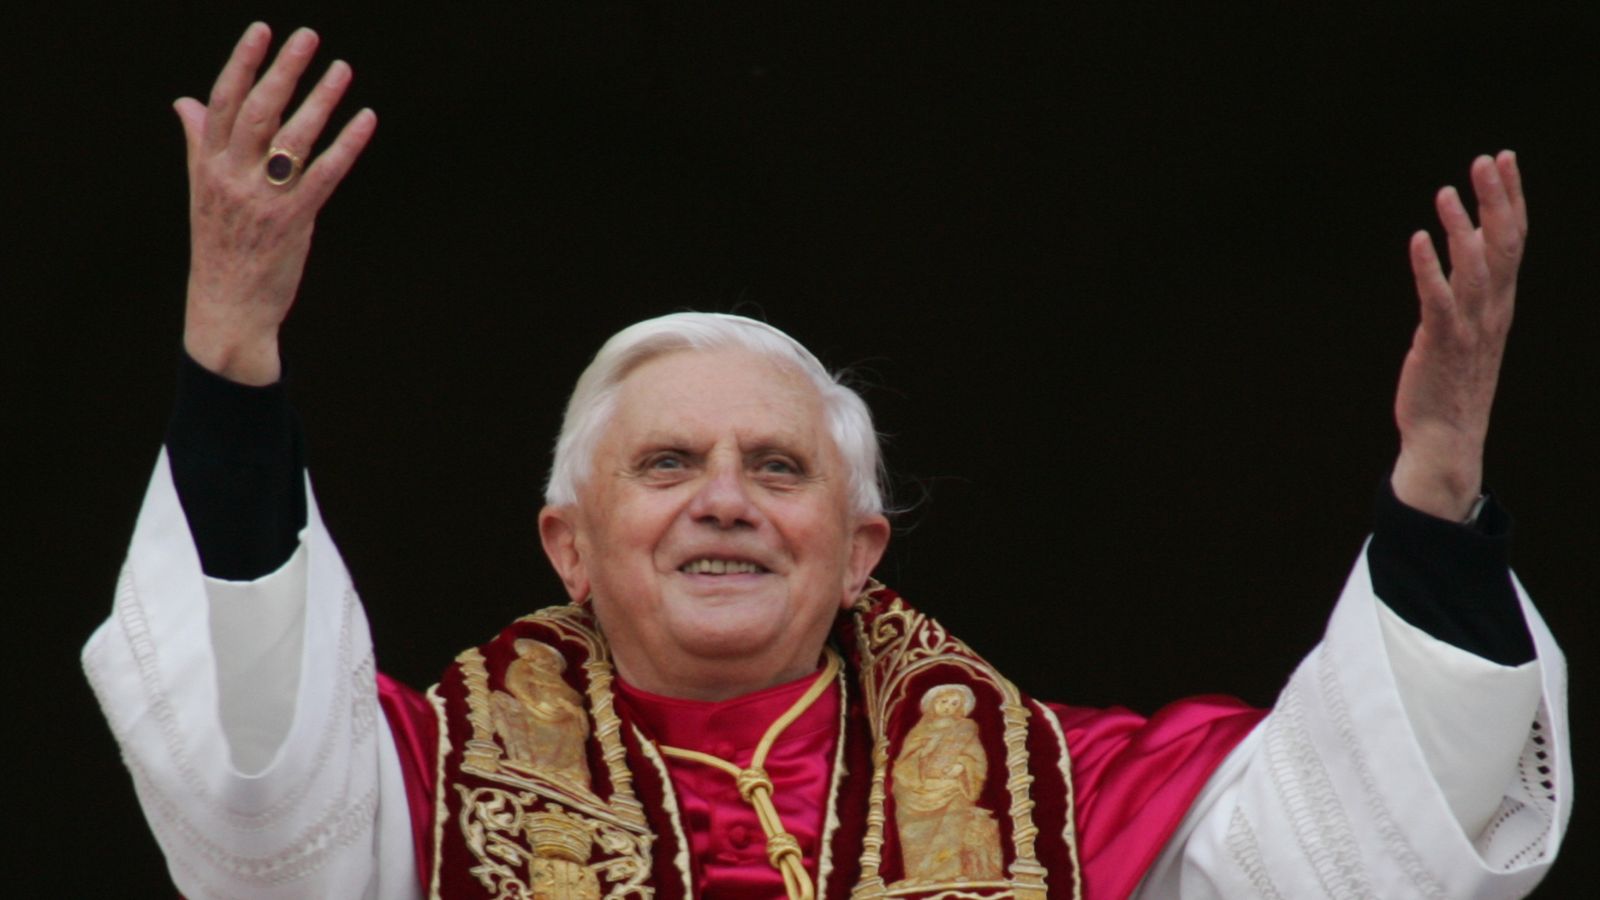 Papst Benedikts Aufstieg an die Spitze und die Kontroversen um seine Regierungszeit |  Weltnachrichten